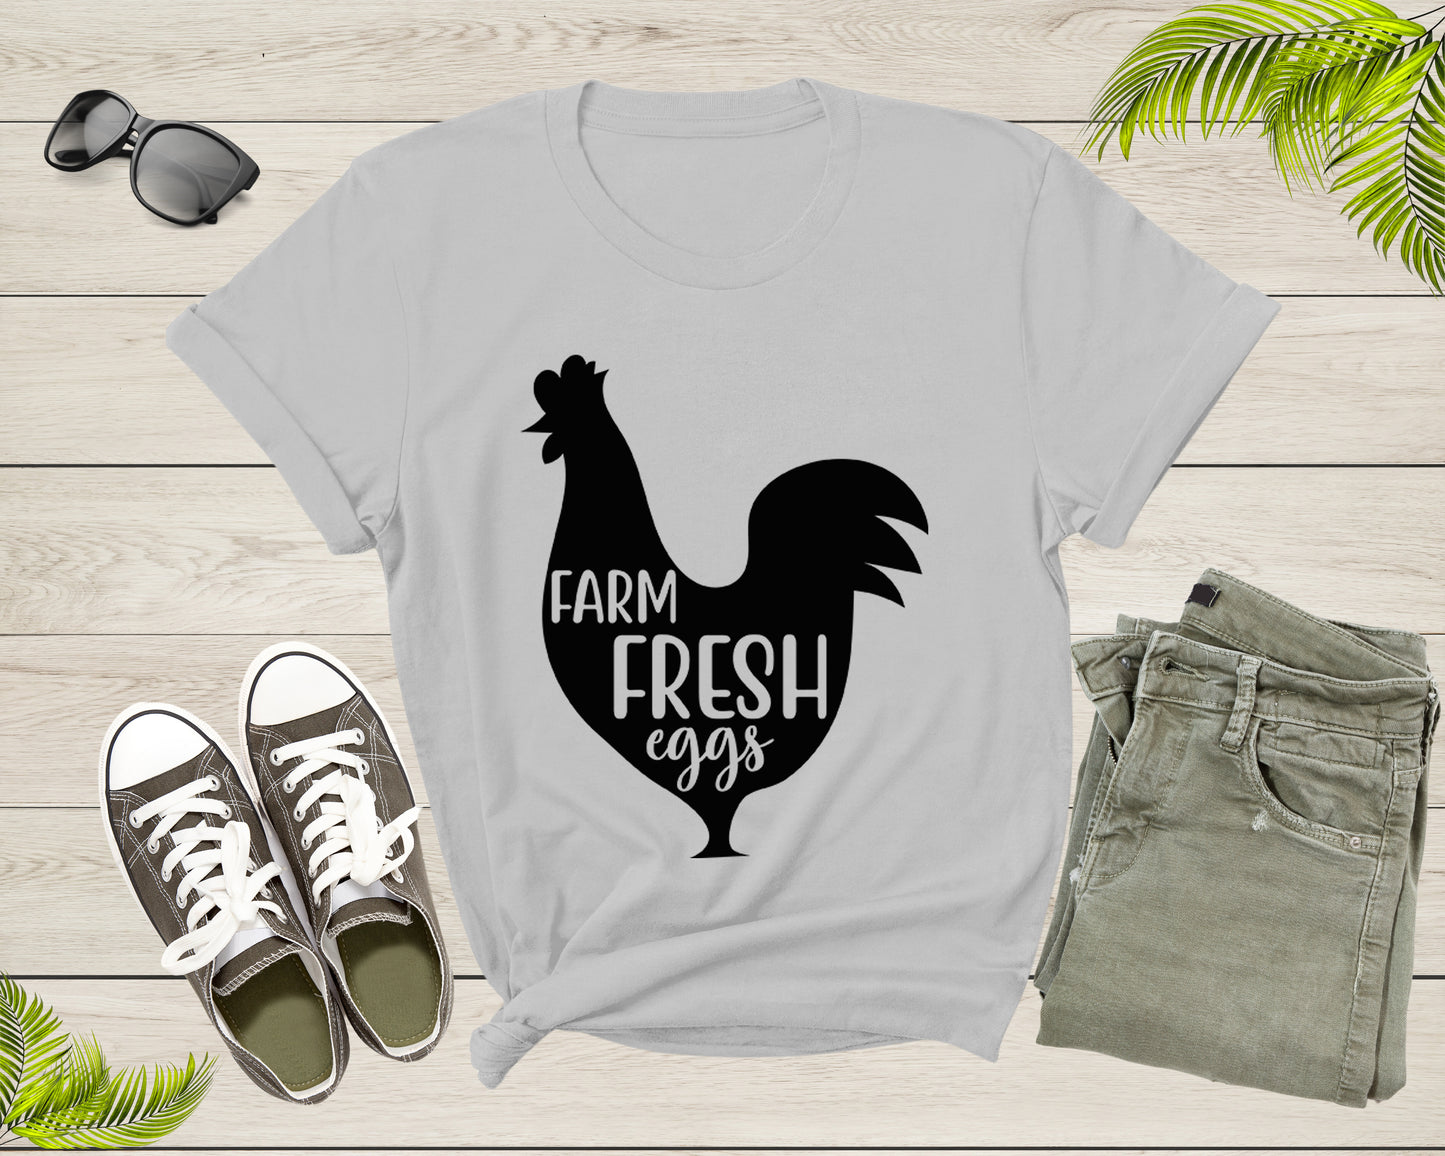 Farm Fresh Eggs Chicken Hen Chick Silhouette for Men Women T-Shirt Chicken Lover Gift T Shirt for Men Women Kids Boys Girls Graphic Tshirt